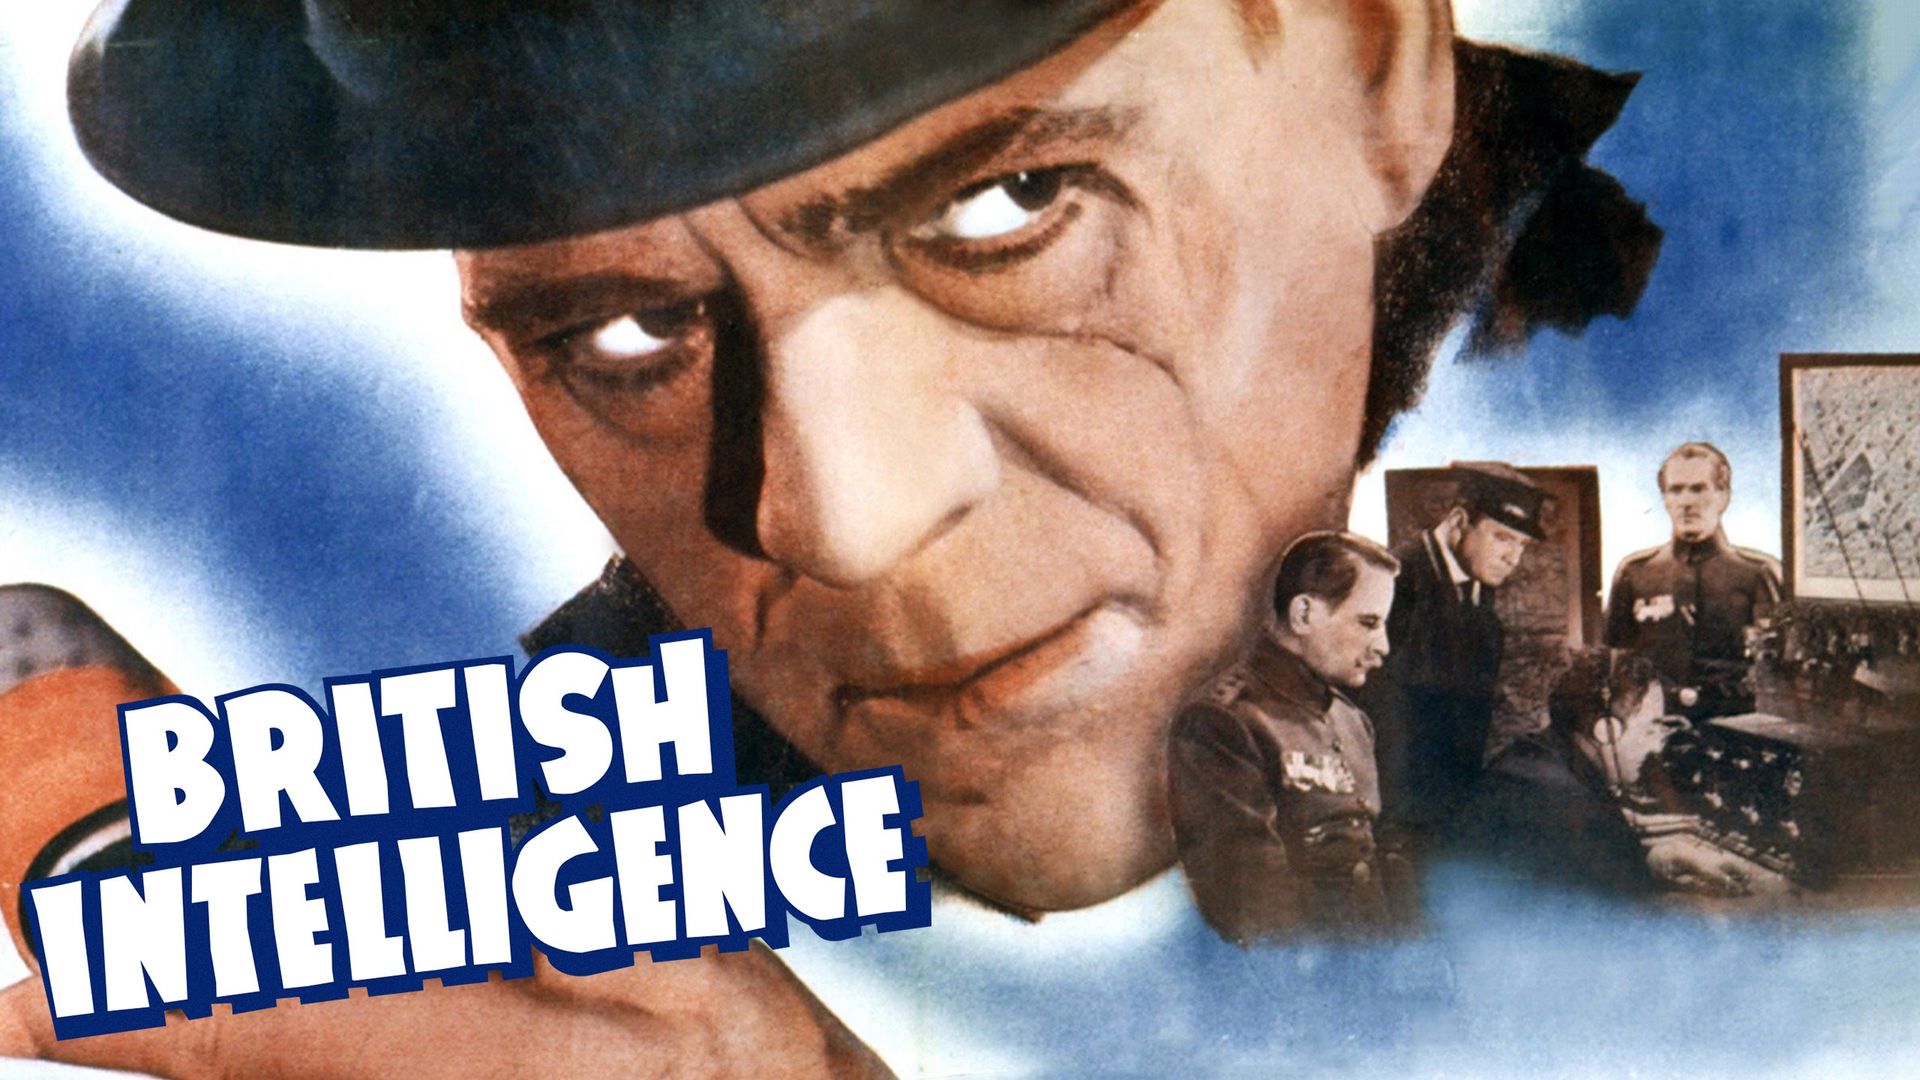 British Intelligence Backdrop